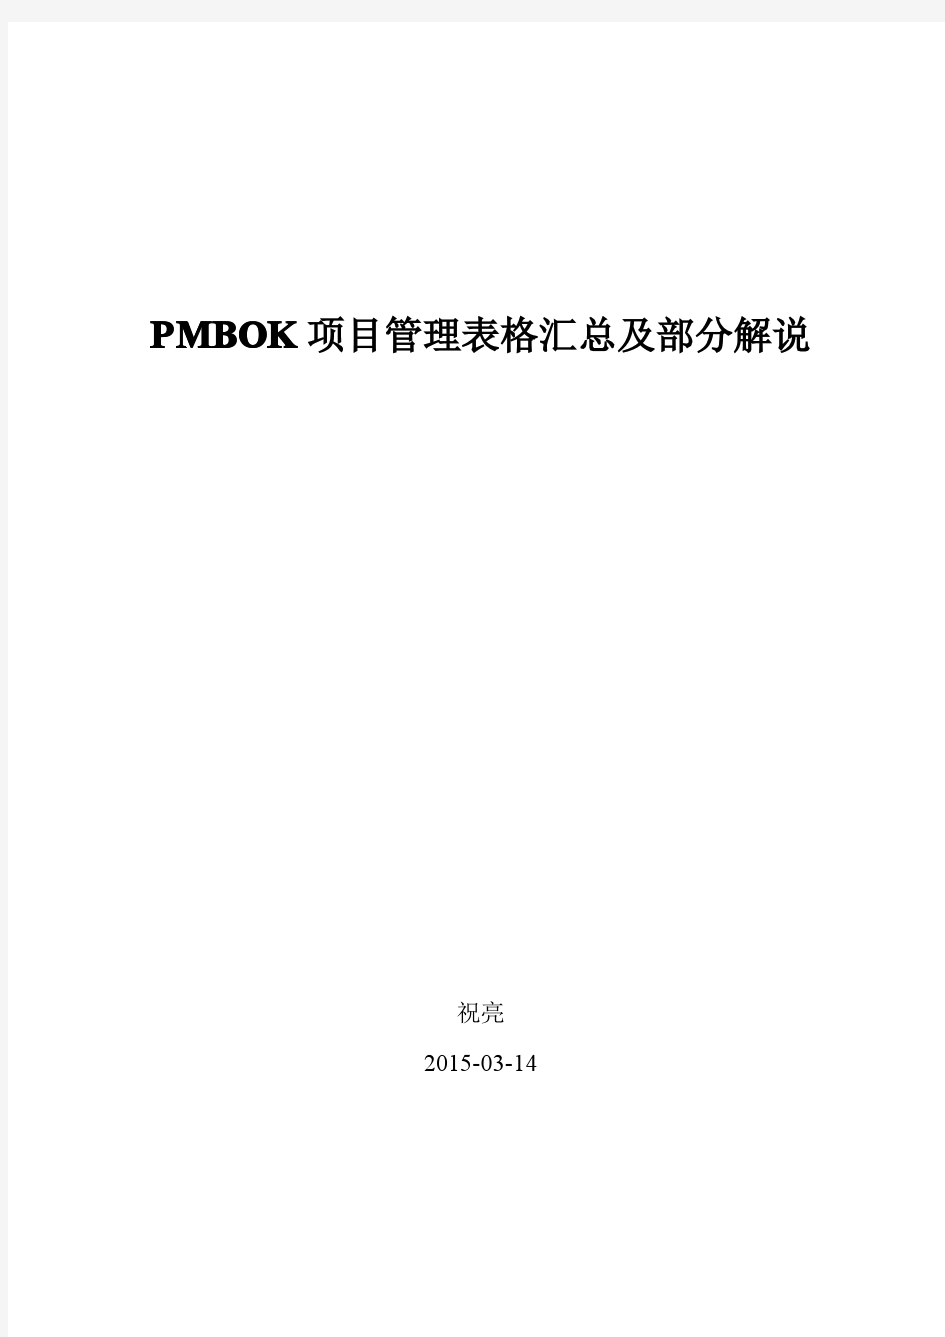 PMBOK指南项目管理实战工具表格汇总简述